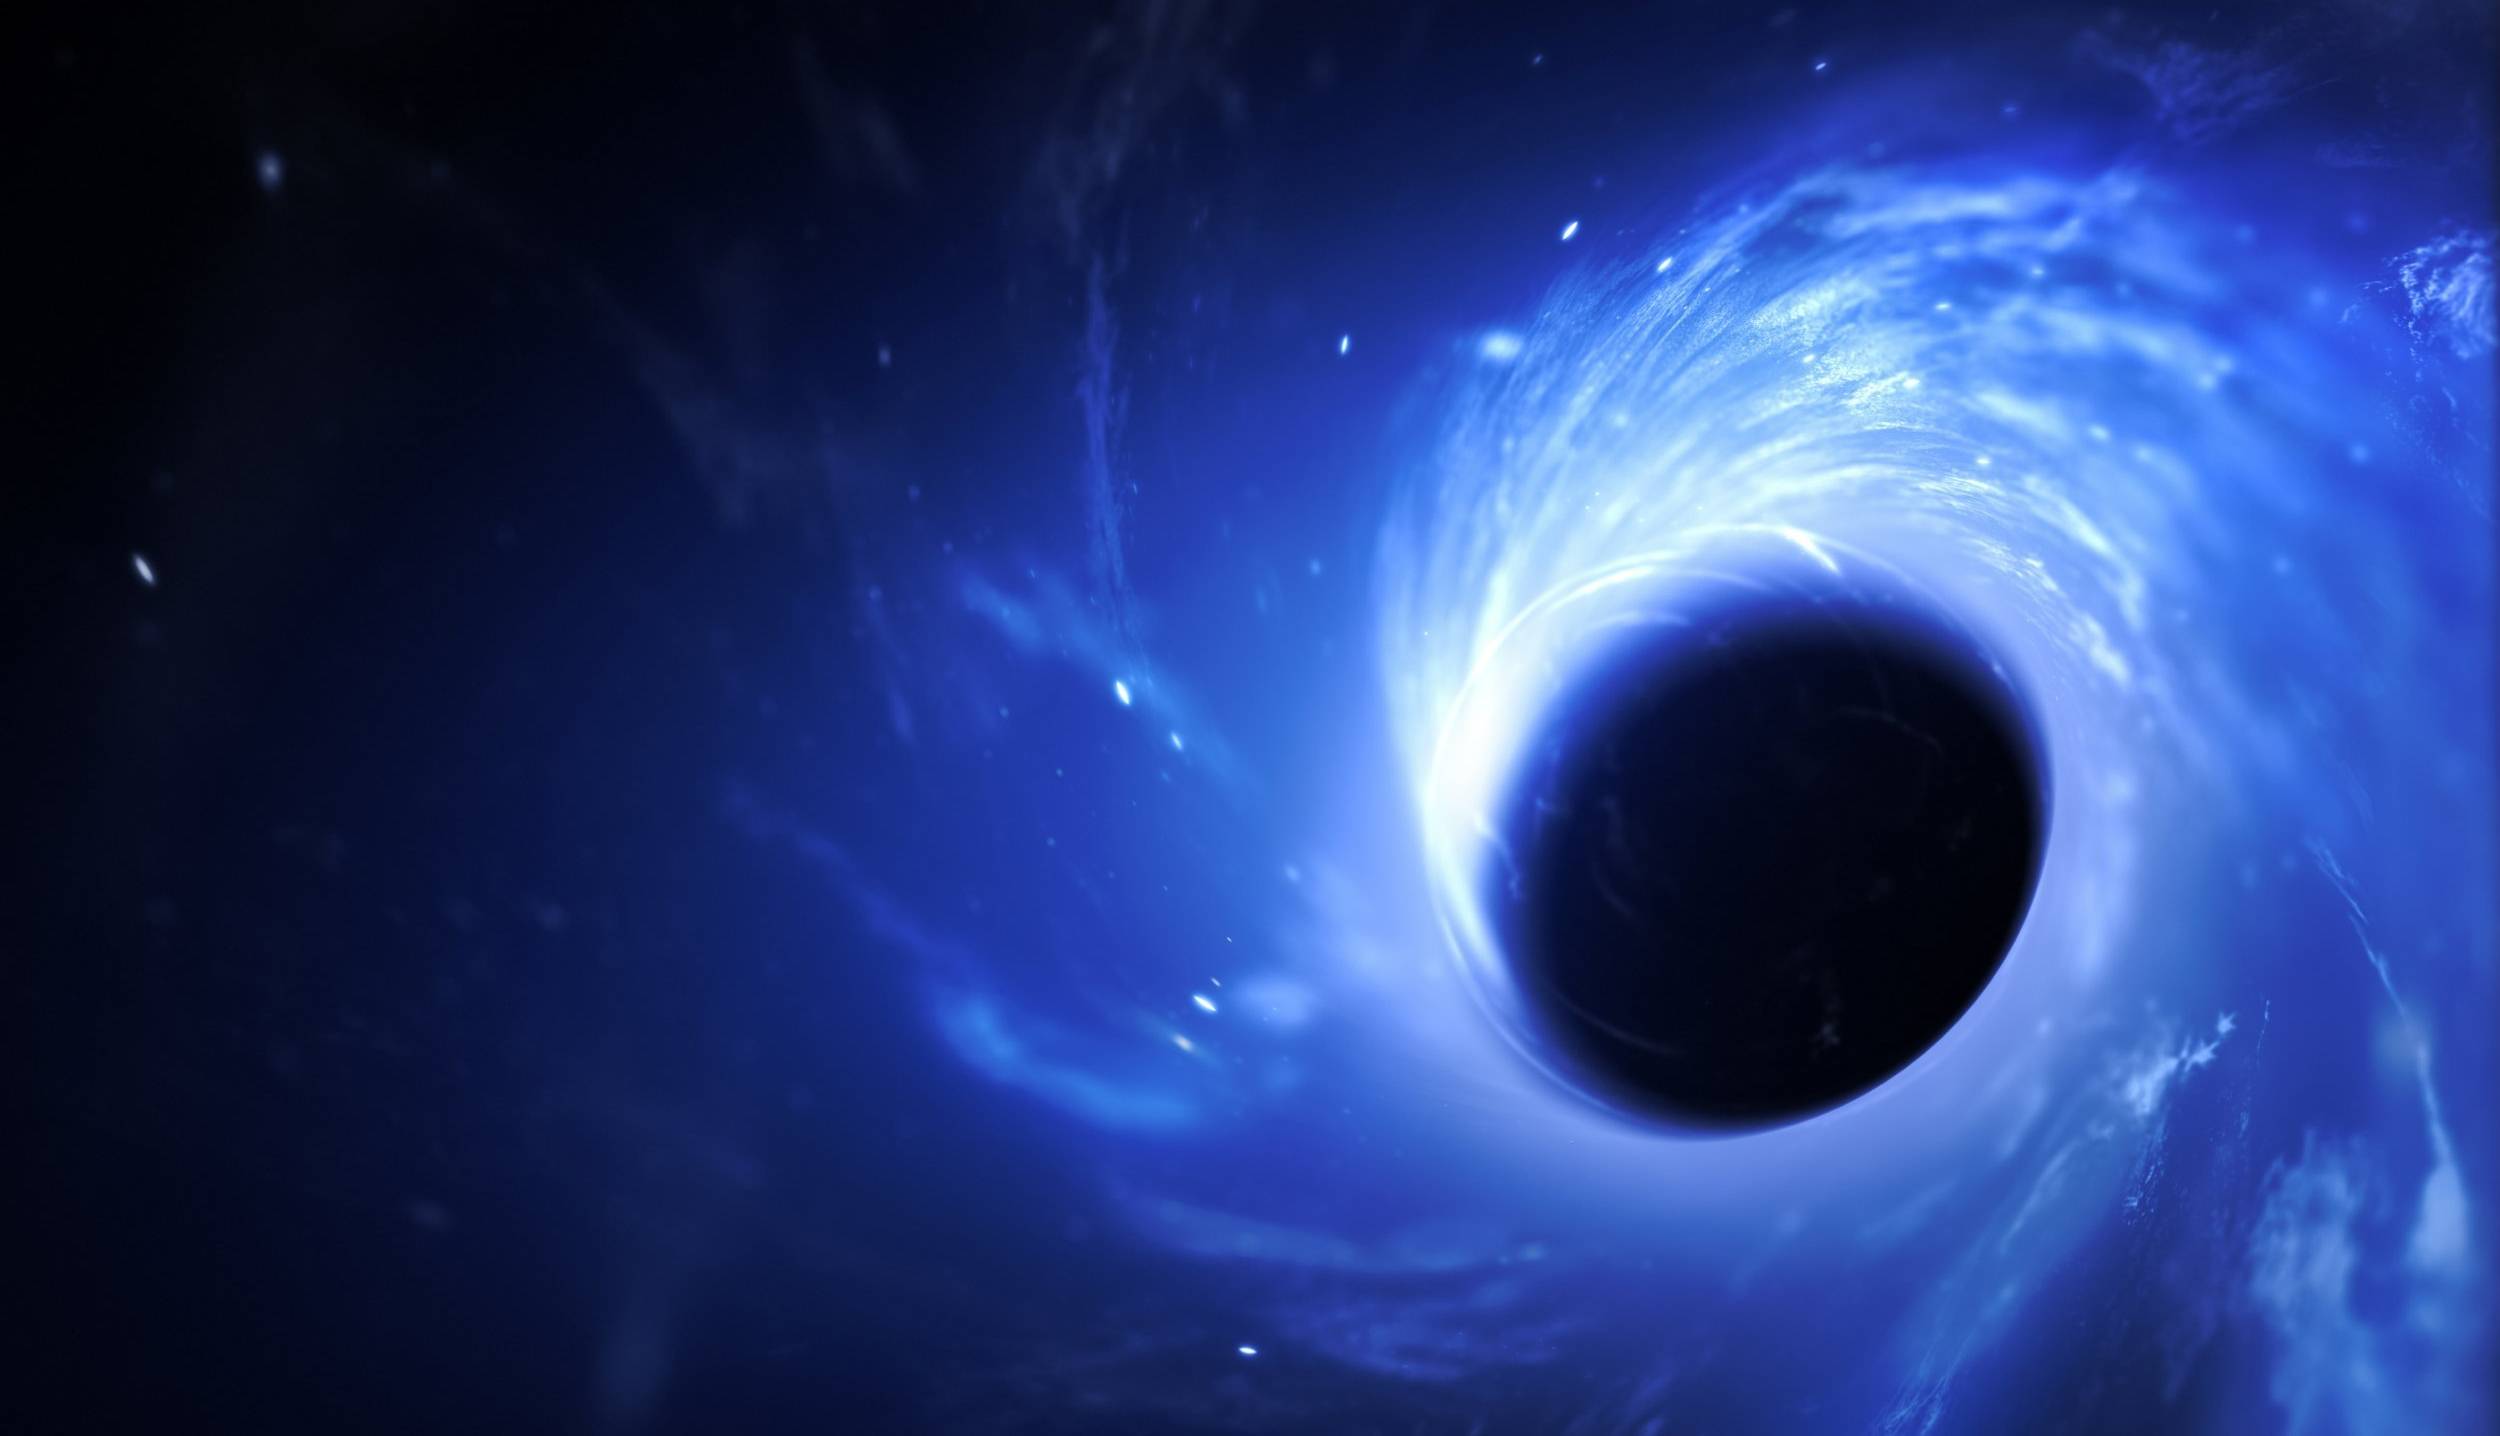 اگر یک سیاهچاله یک میلی متری روی زمین ظاهر شود چه اتفاقی می افتد؟